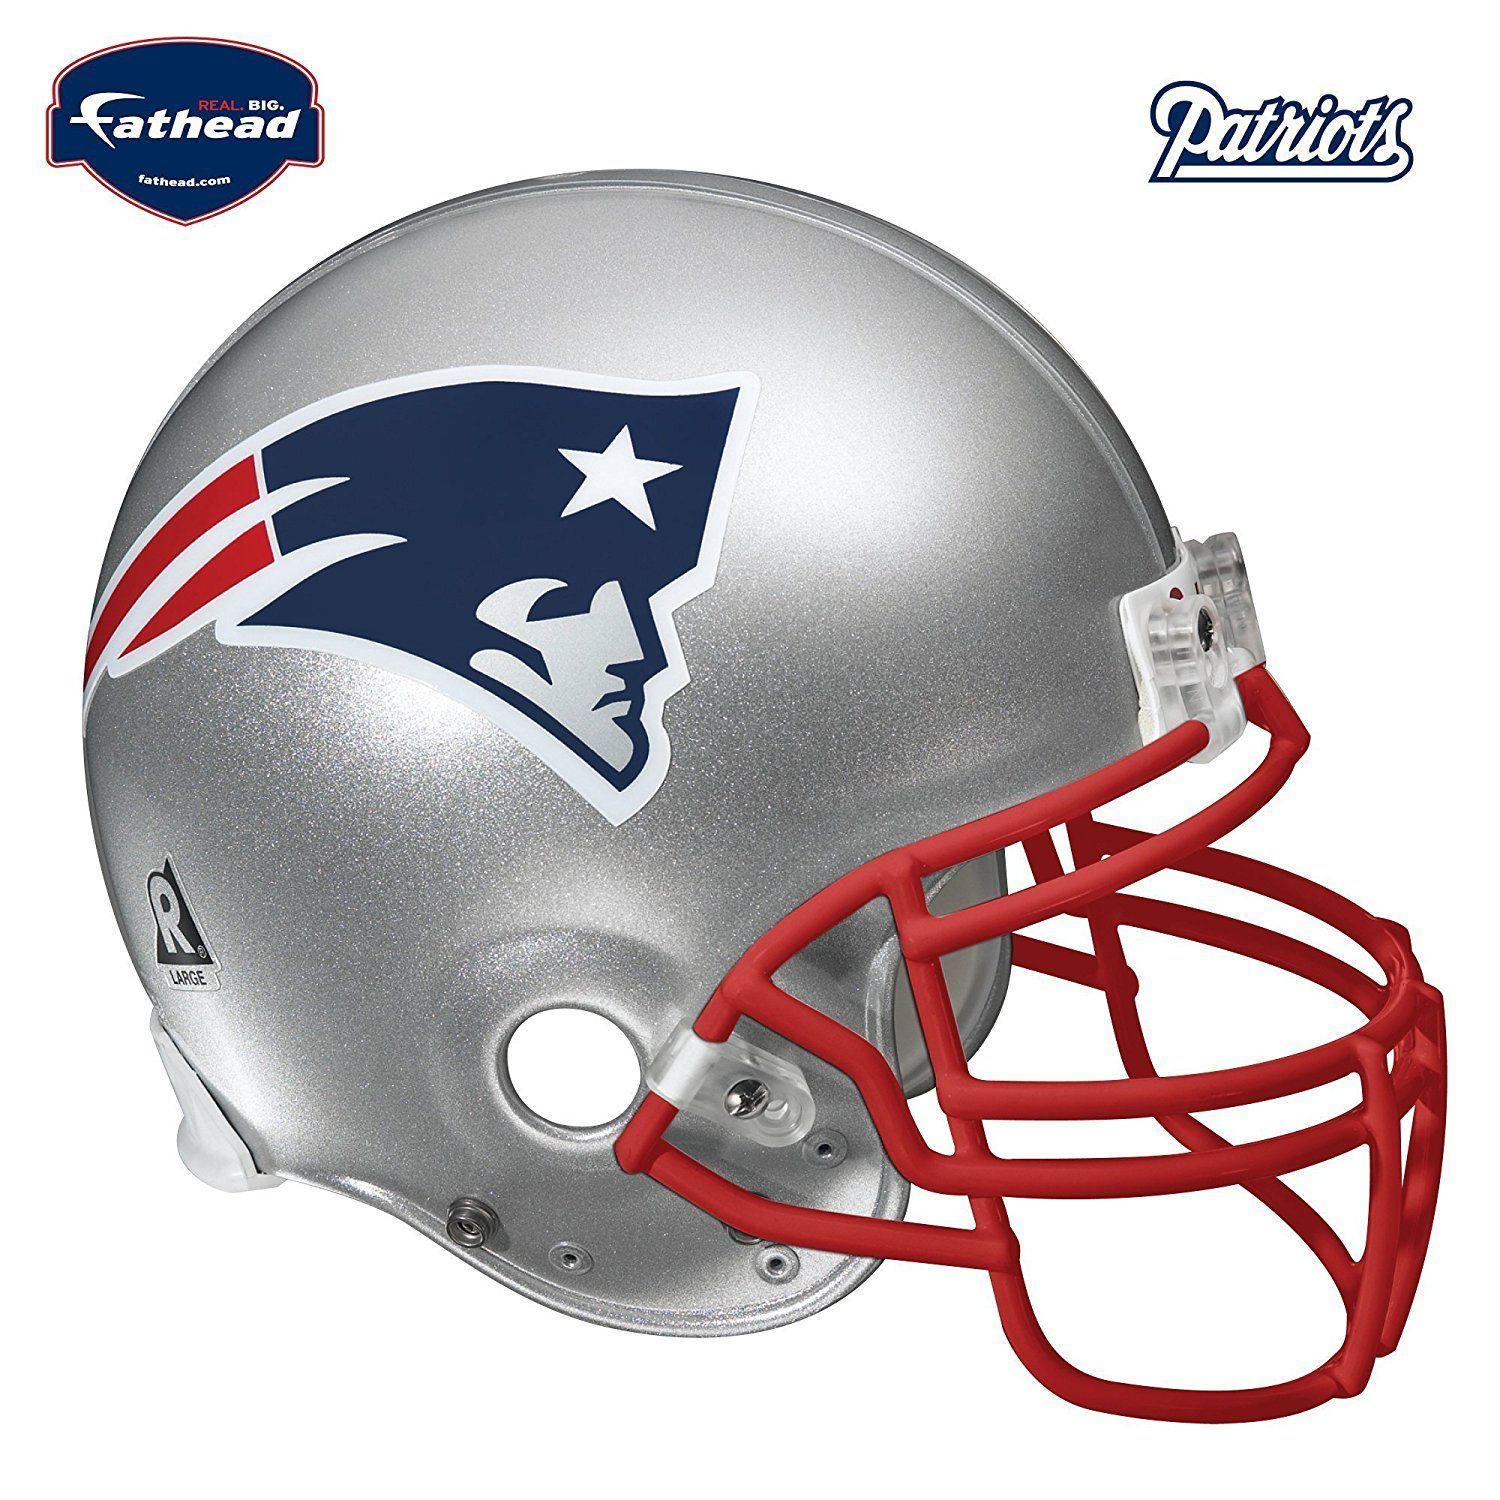 Patriots Helmet Logo - Buy New England Patriots FATHEAD Team Helmet Logo Official NFL Vinyl ...